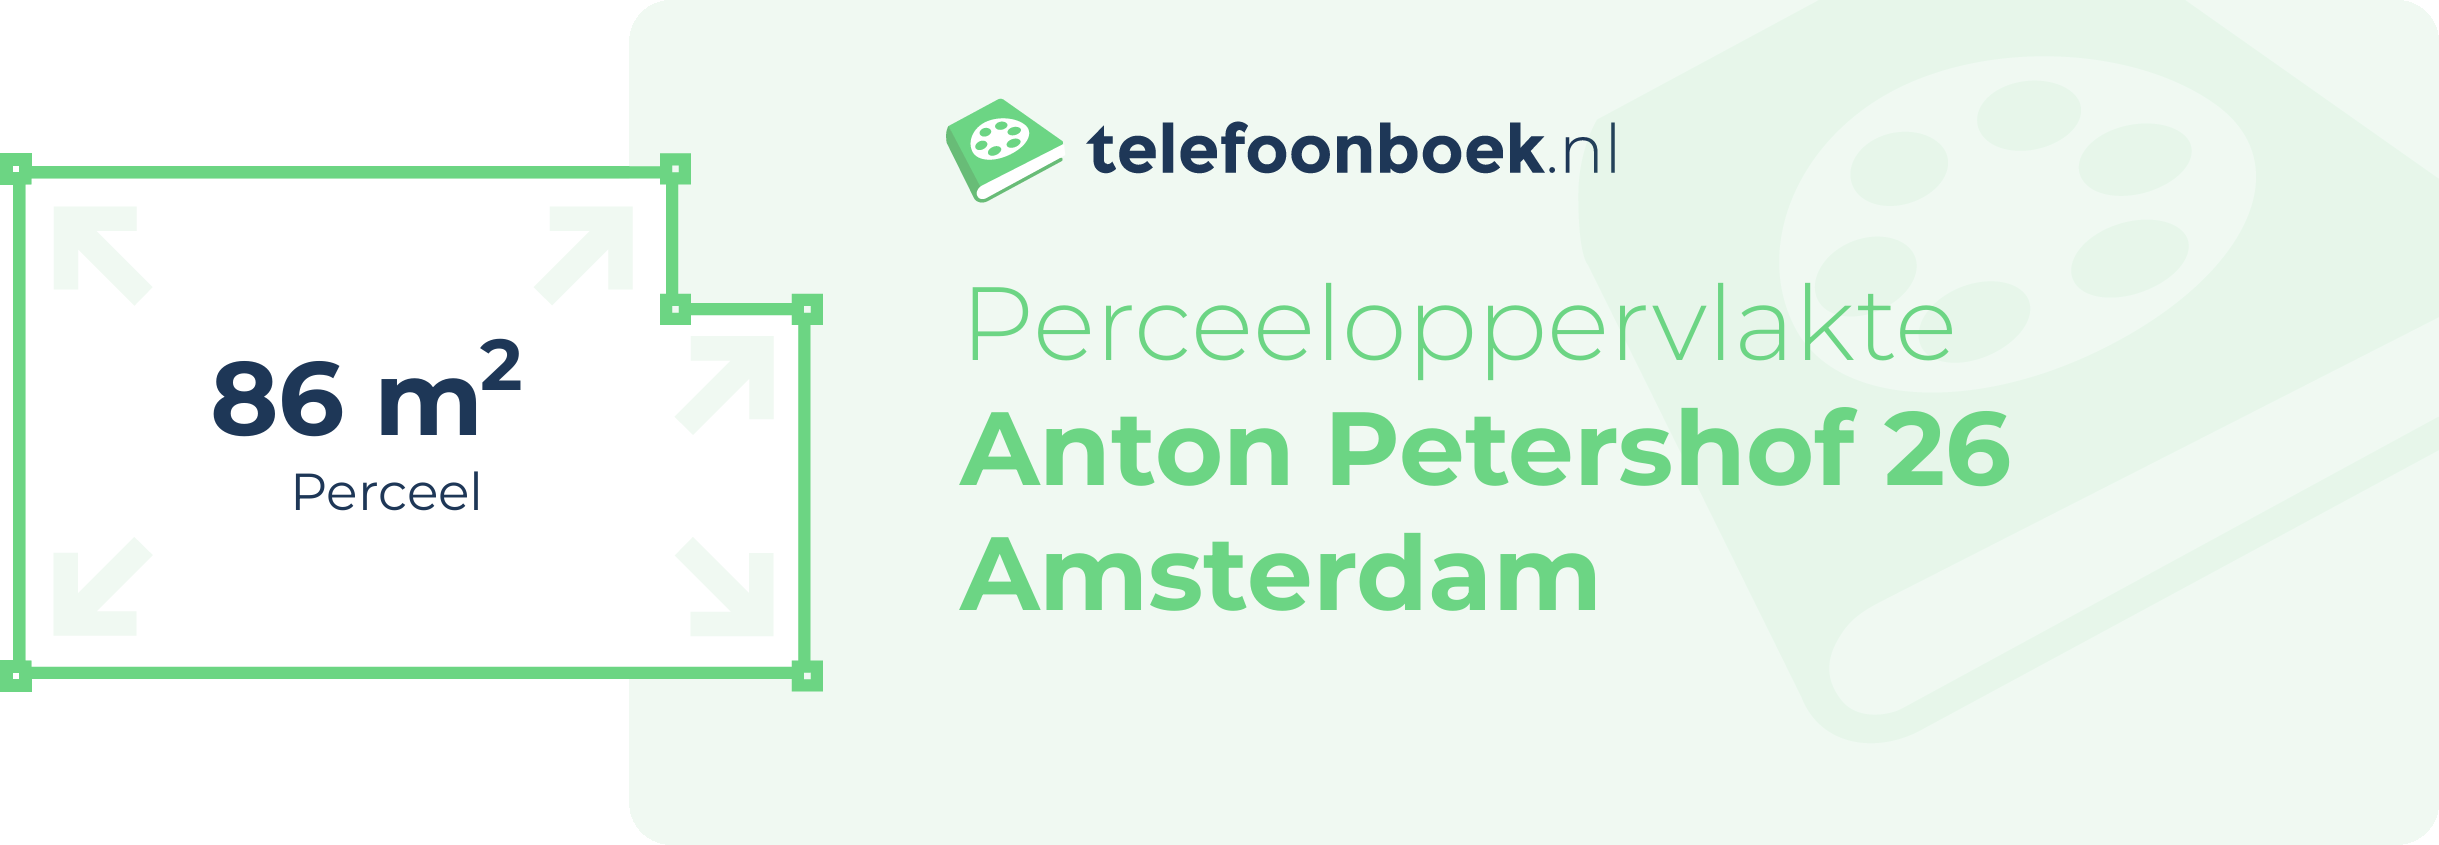 Perceeloppervlakte Anton Petershof 26 Amsterdam